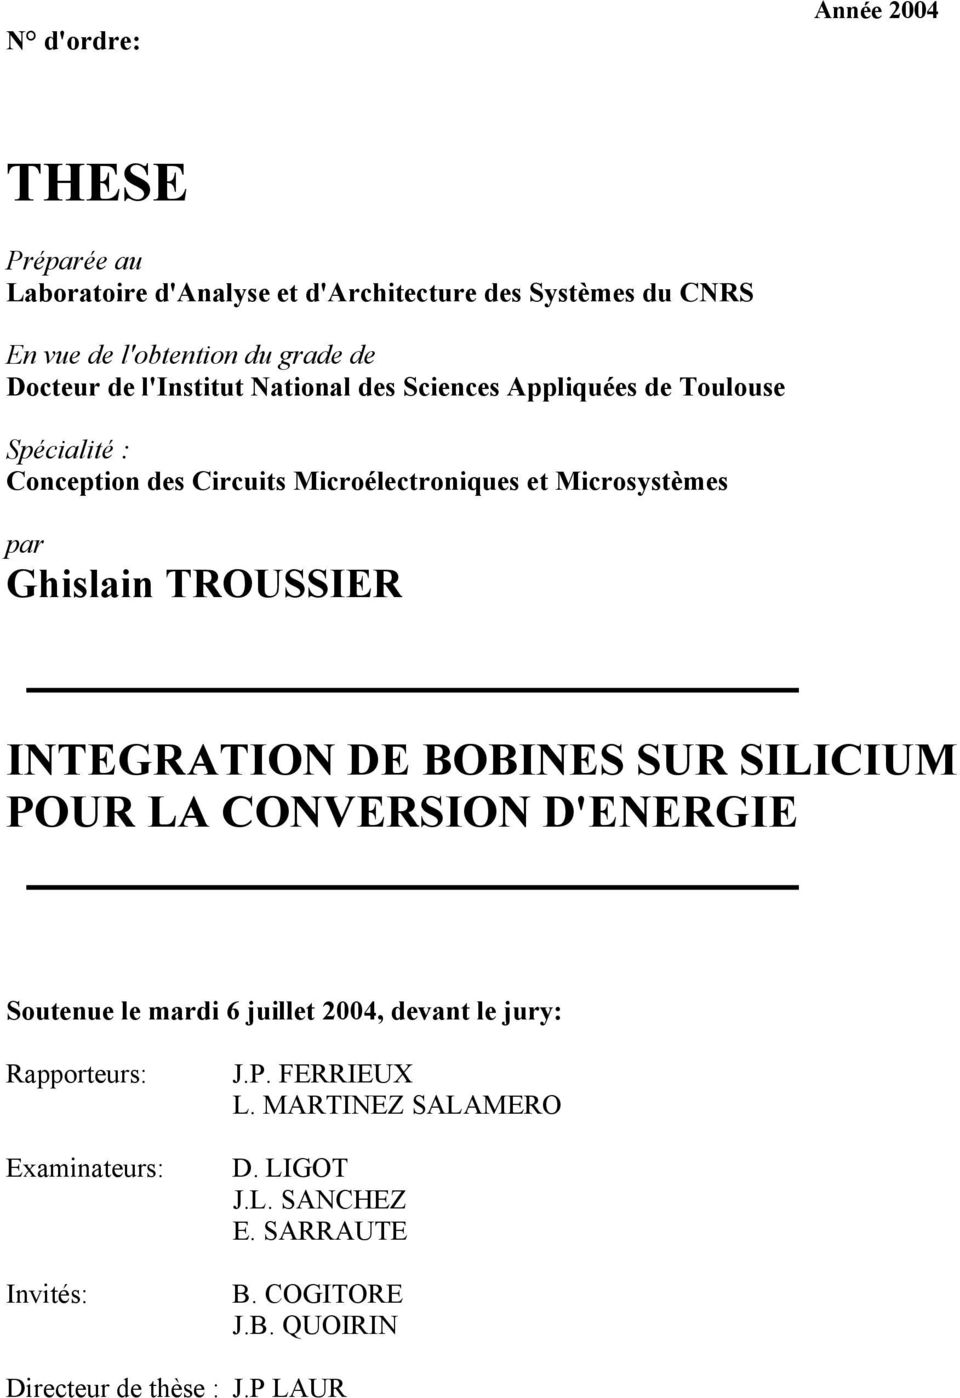 Ghislain TROUSSIER INTEGRATION DE BOBINES SUR SILICIUM POUR LA CONVERSION D'ENERGIE Soutenue le mardi 6 juillet 2004, devant le jury: